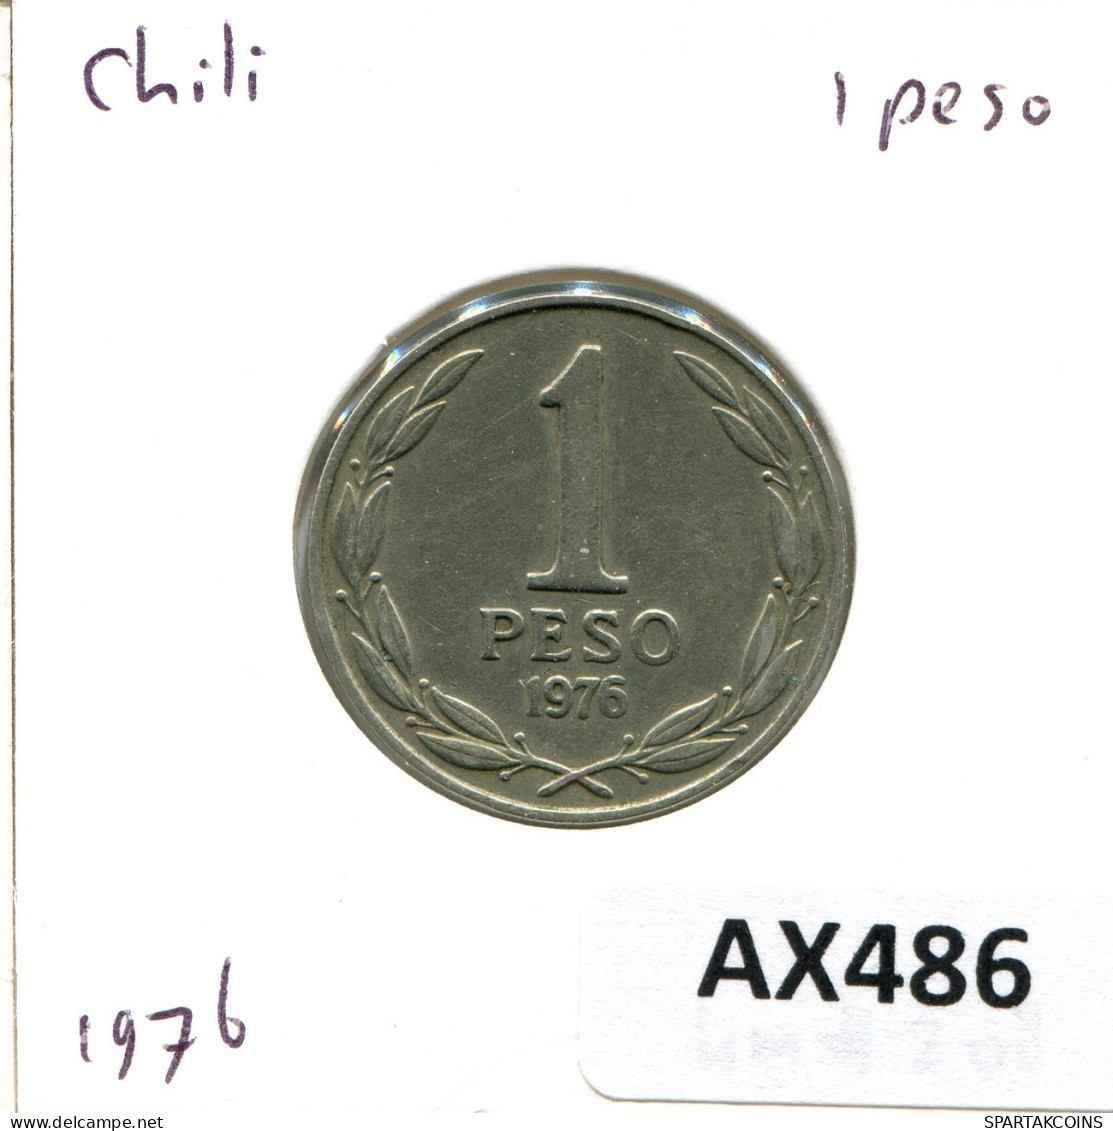 1 PESO 1976 CHILE Coin #AX486.U.A - Chili